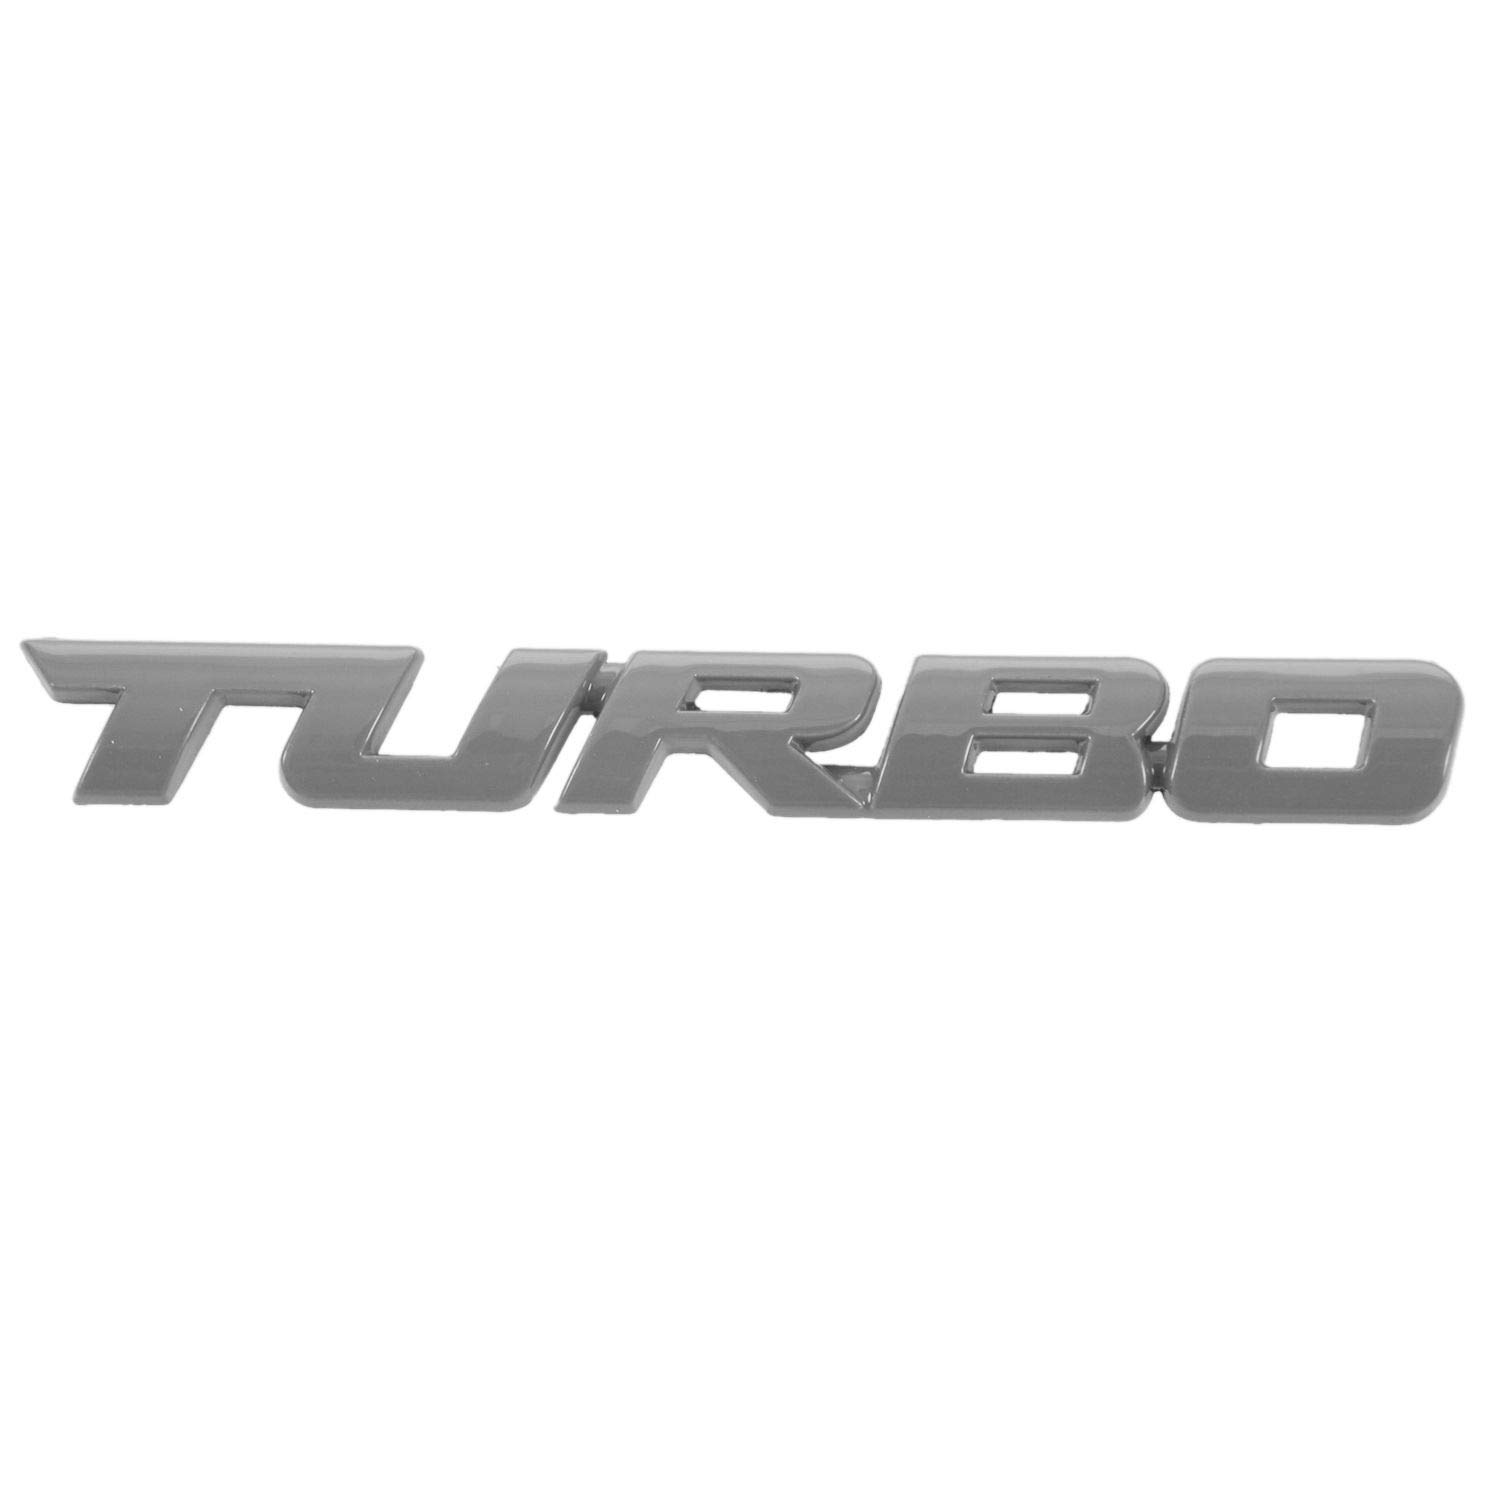 Pasyauer Turbo Universal Auto Motorrad Auto 3D Metall Emblem Abzeichen Aufkleber, Silber von Pasyauer